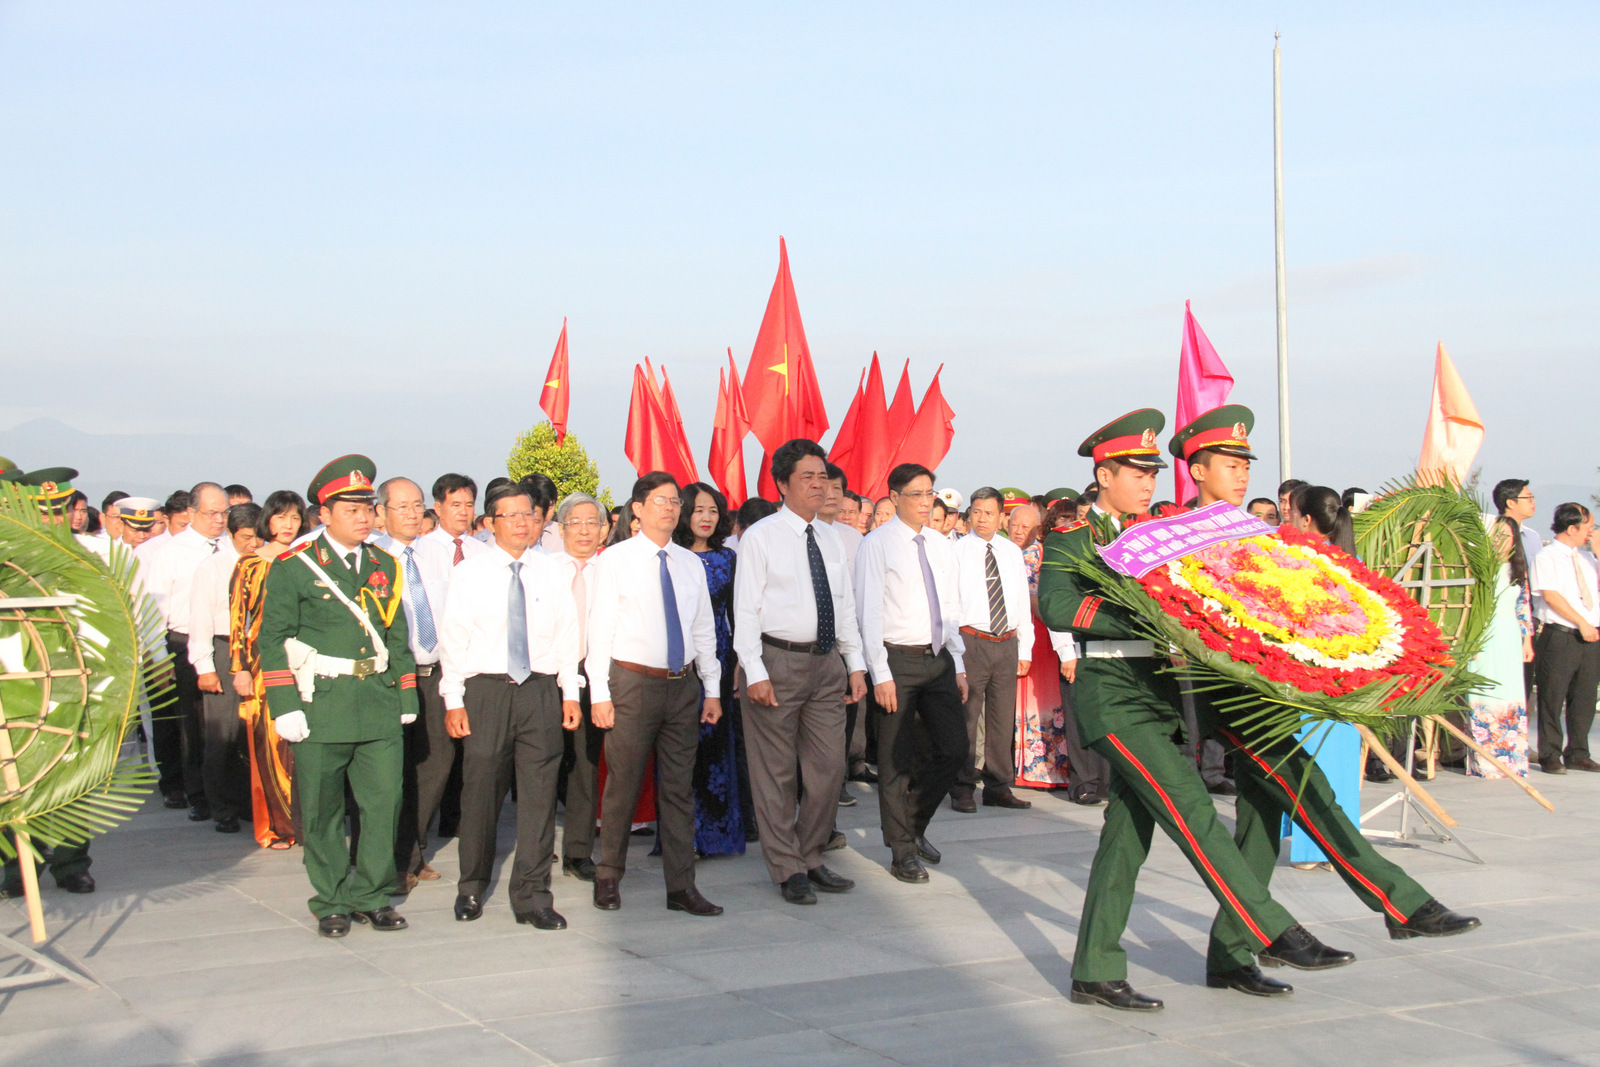  Đoàn đại biểu Tỉnh ủy, HĐND, UBND và Ủy ban MTTQ Việt Nam tỉnh Khánh Hòa dâng hoa tại Khu tưởng niệm Gạc Ma